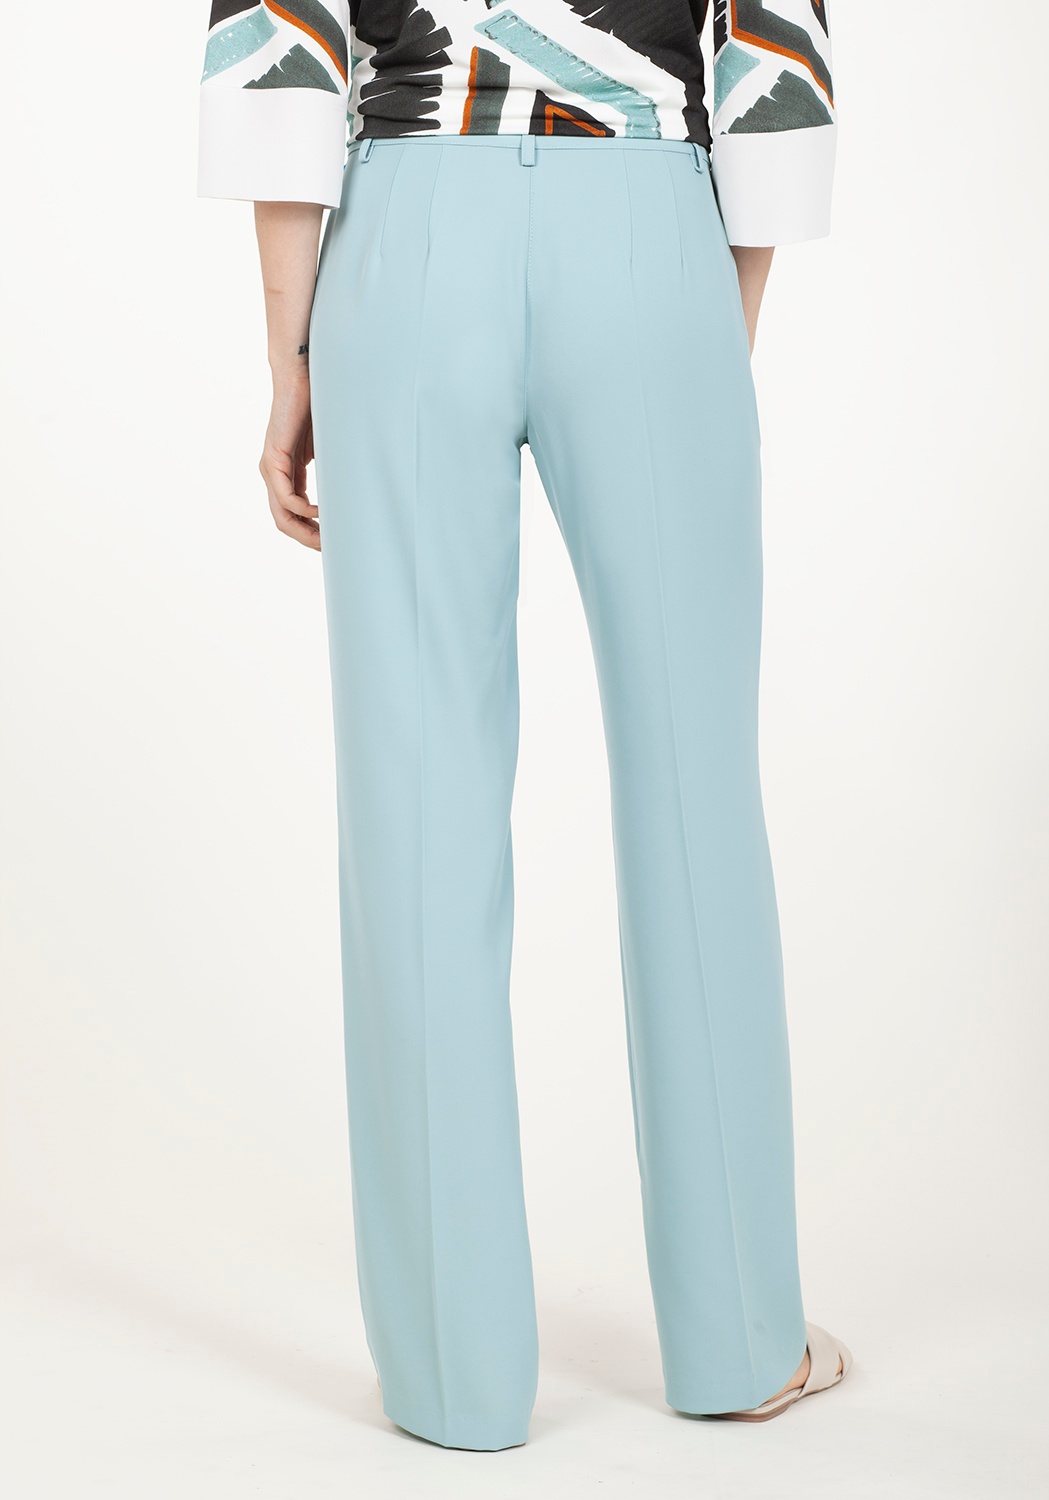 Pantalon droit bleu clair 2